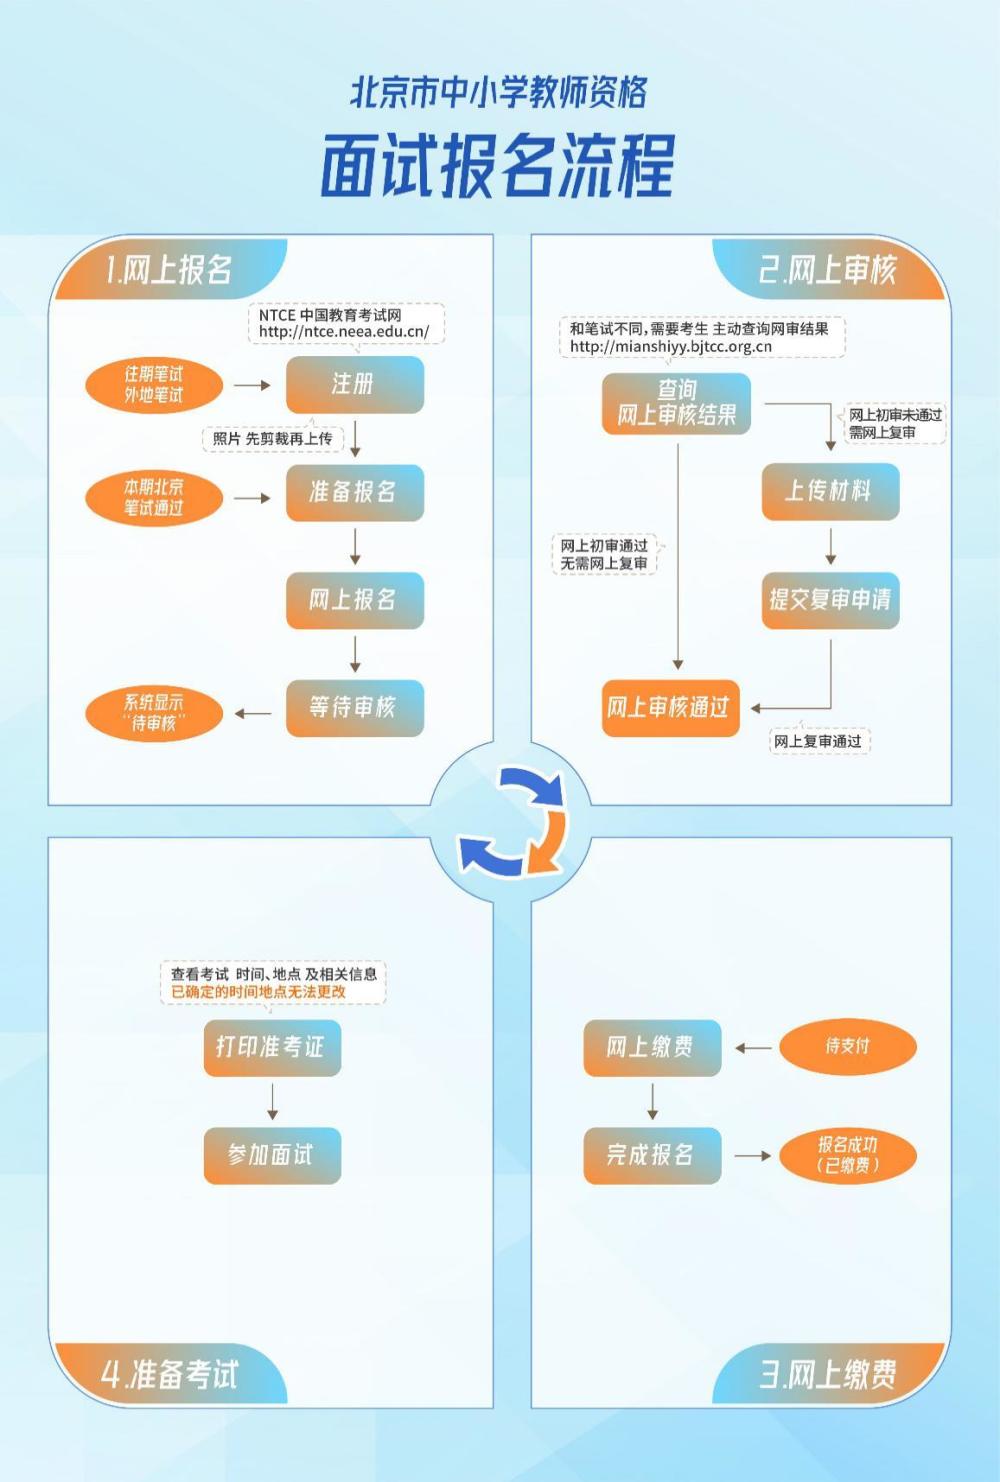 北京下半年中小学教师资格面试考试：考生须持48小时内核酸证明